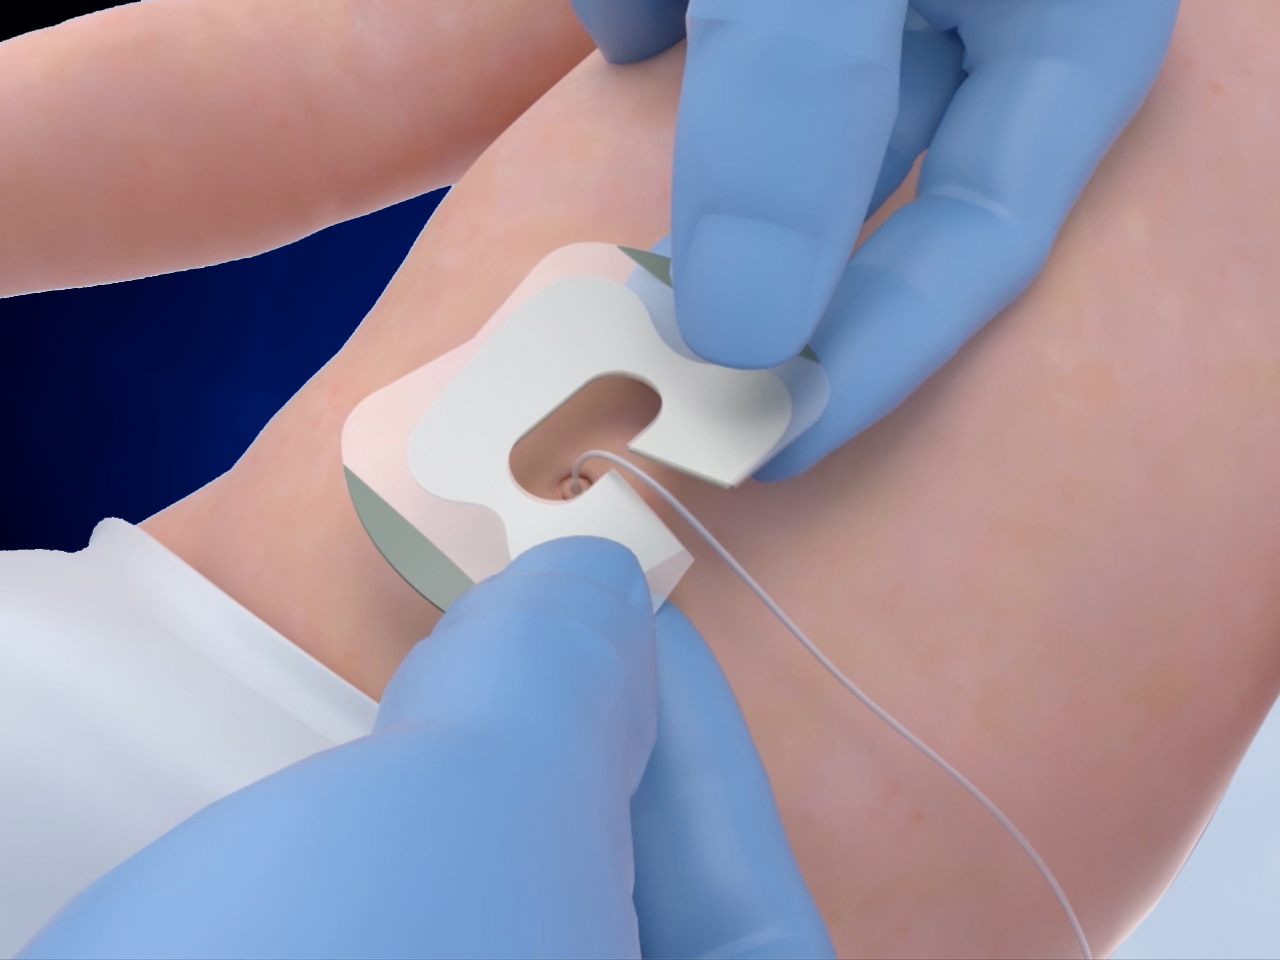 Apply NeoBridge around catheter